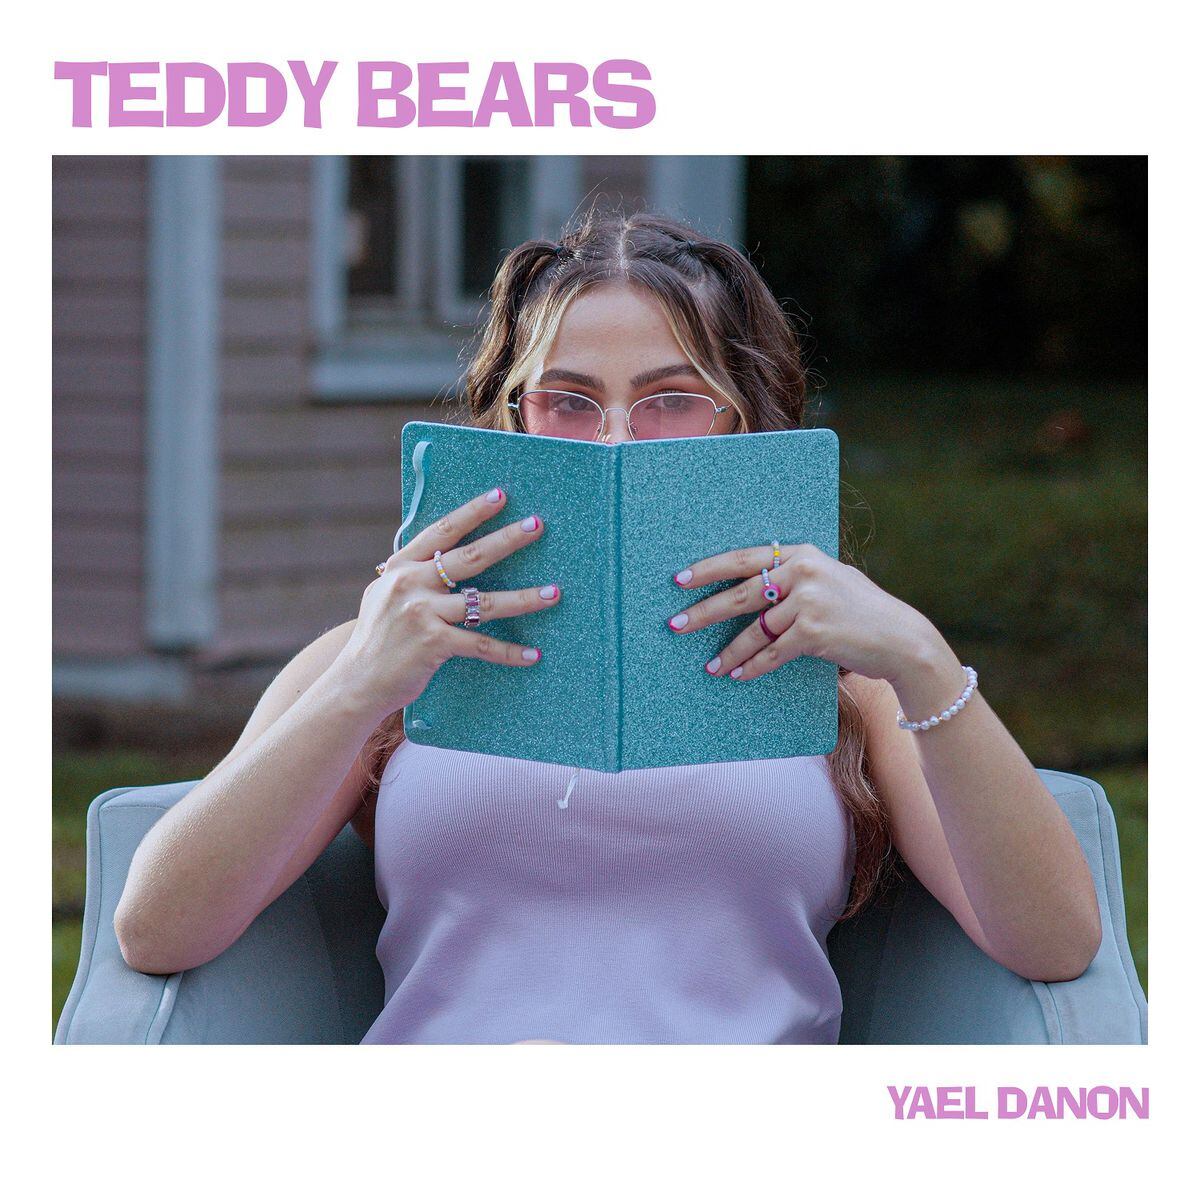 La cantante panameña Yael Danon estrena su nueva canción ‘Teddy Bears’